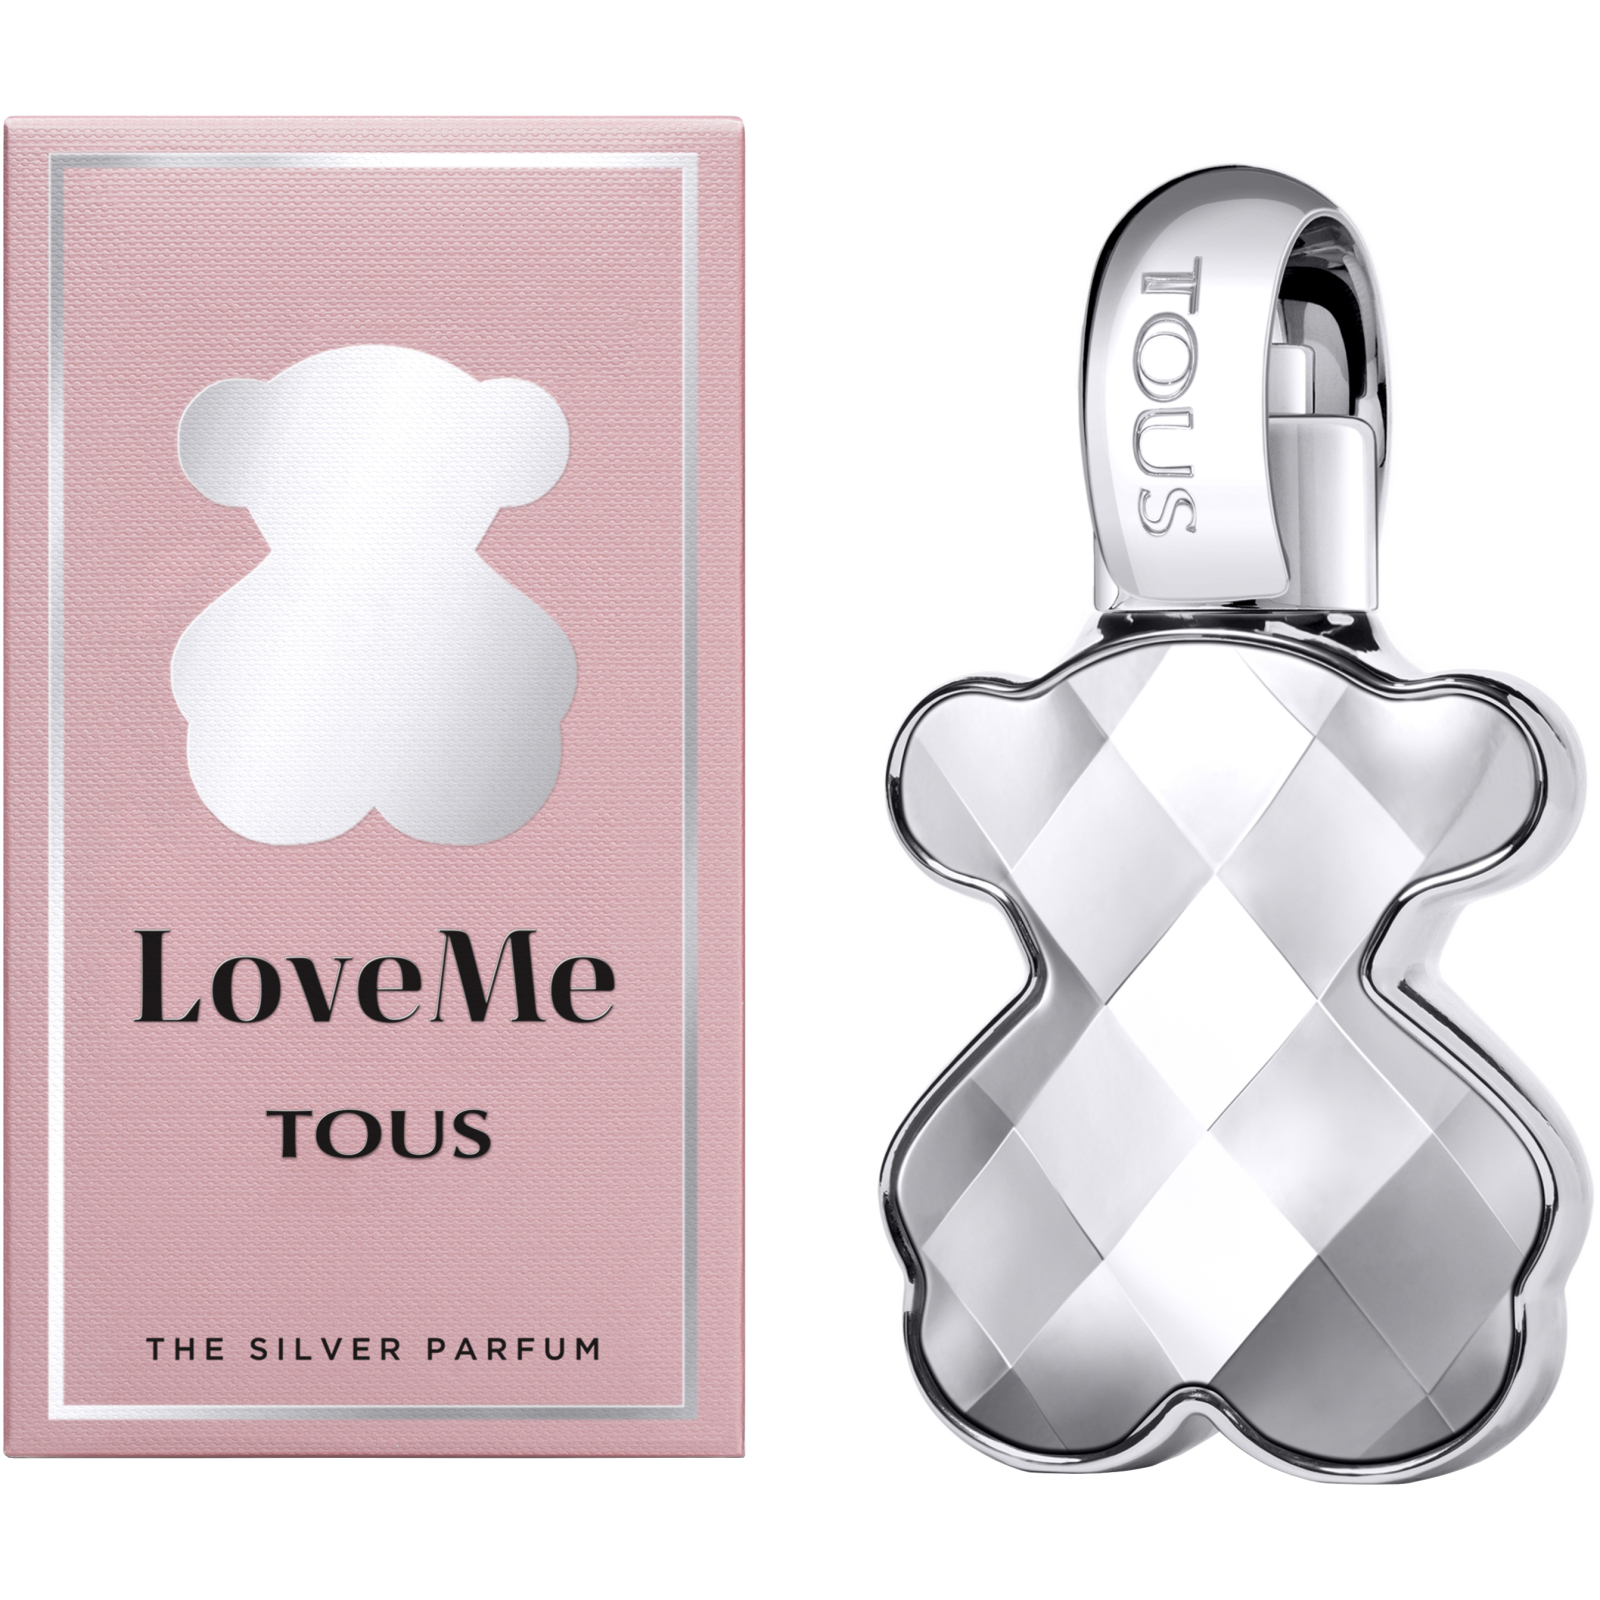 Парфюмированная вода Tous LoveMe The Silver Parfum 90 мл (8436550509847) изображение 3